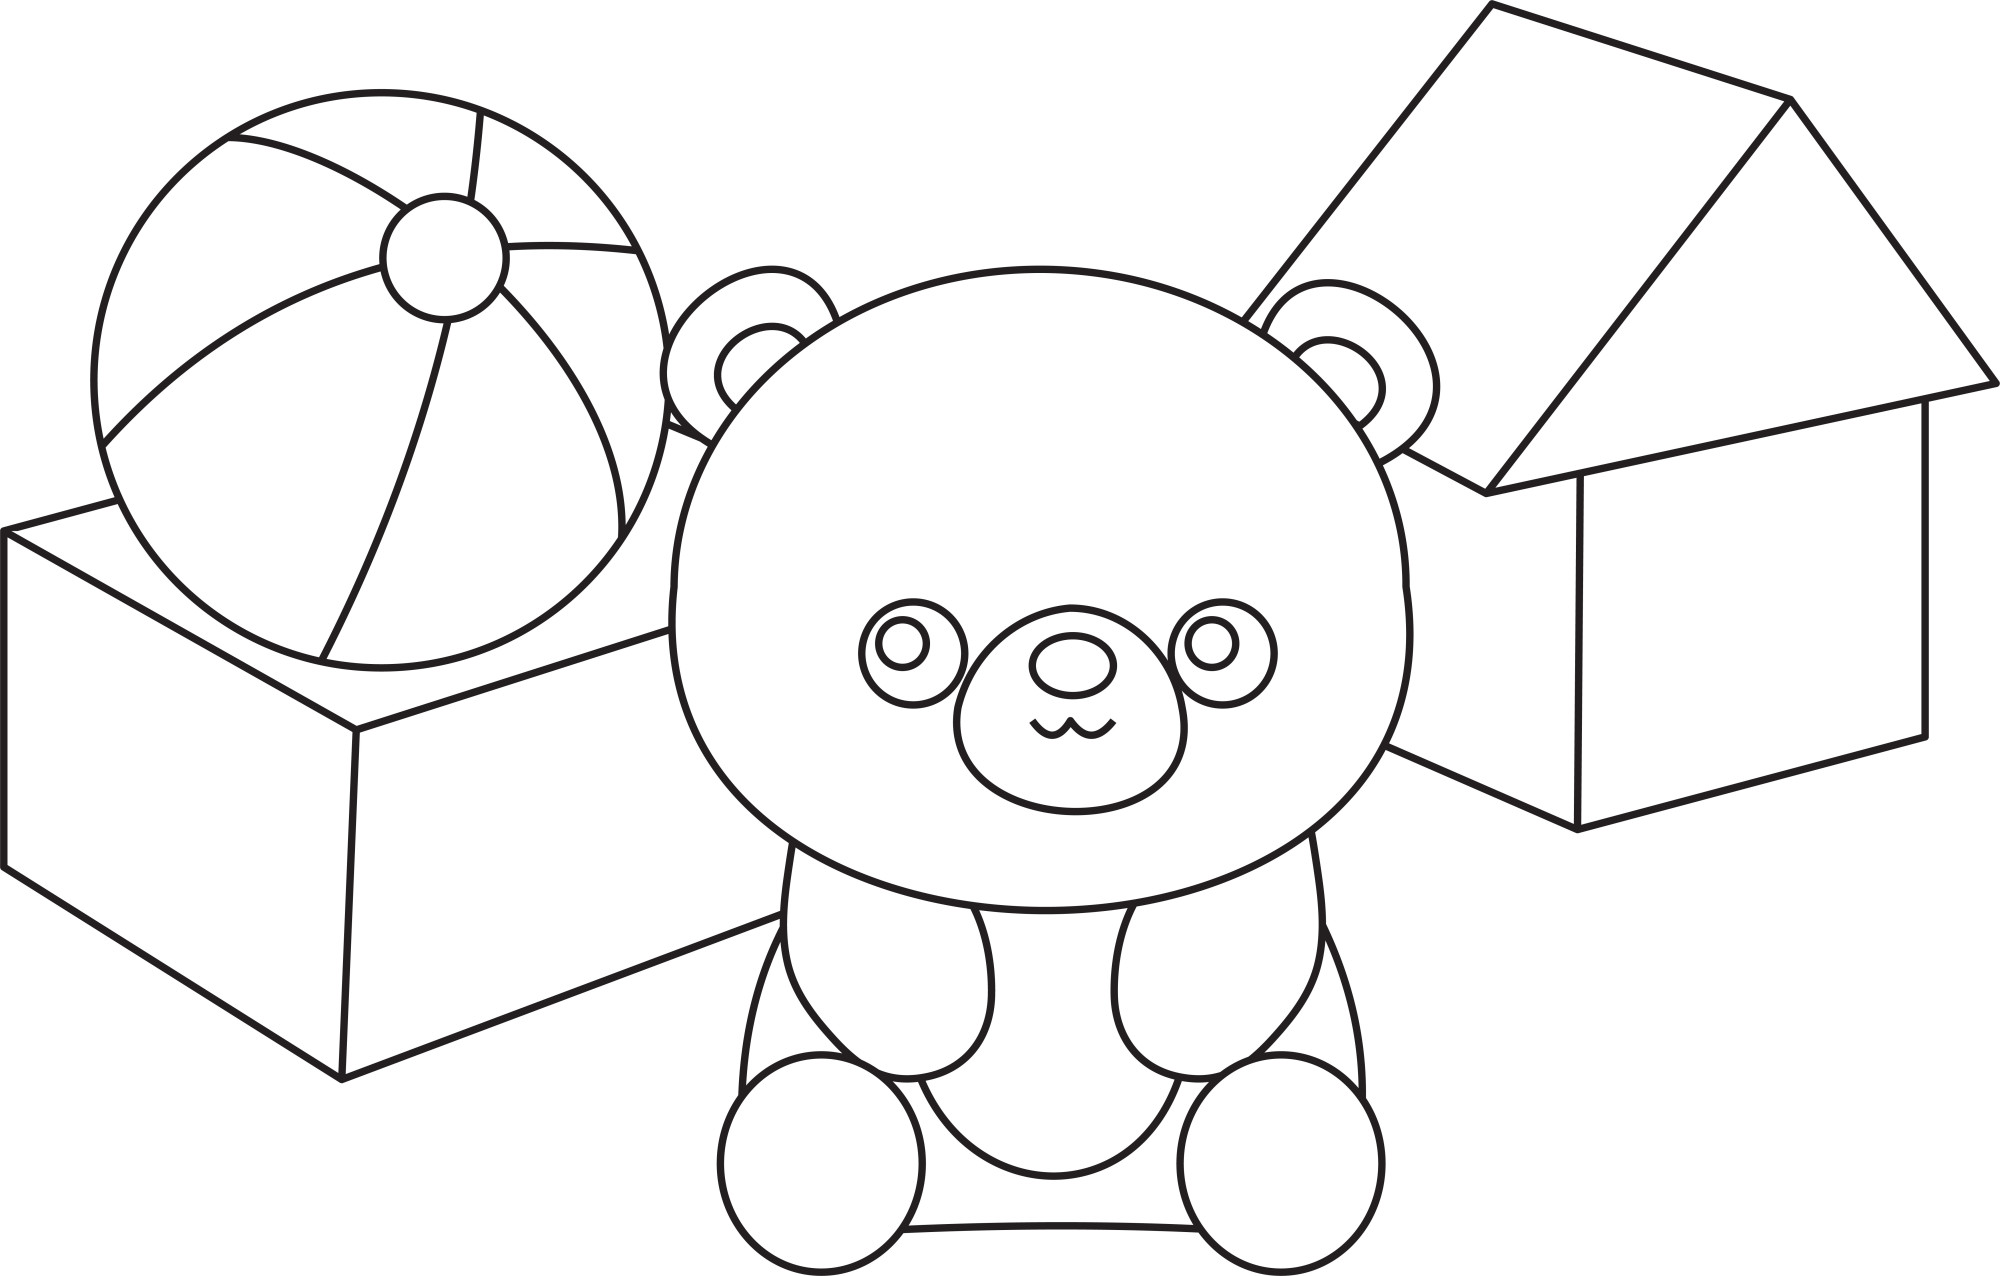 Раскраска для детей: игрушки детские: мишка, мячик и кубики